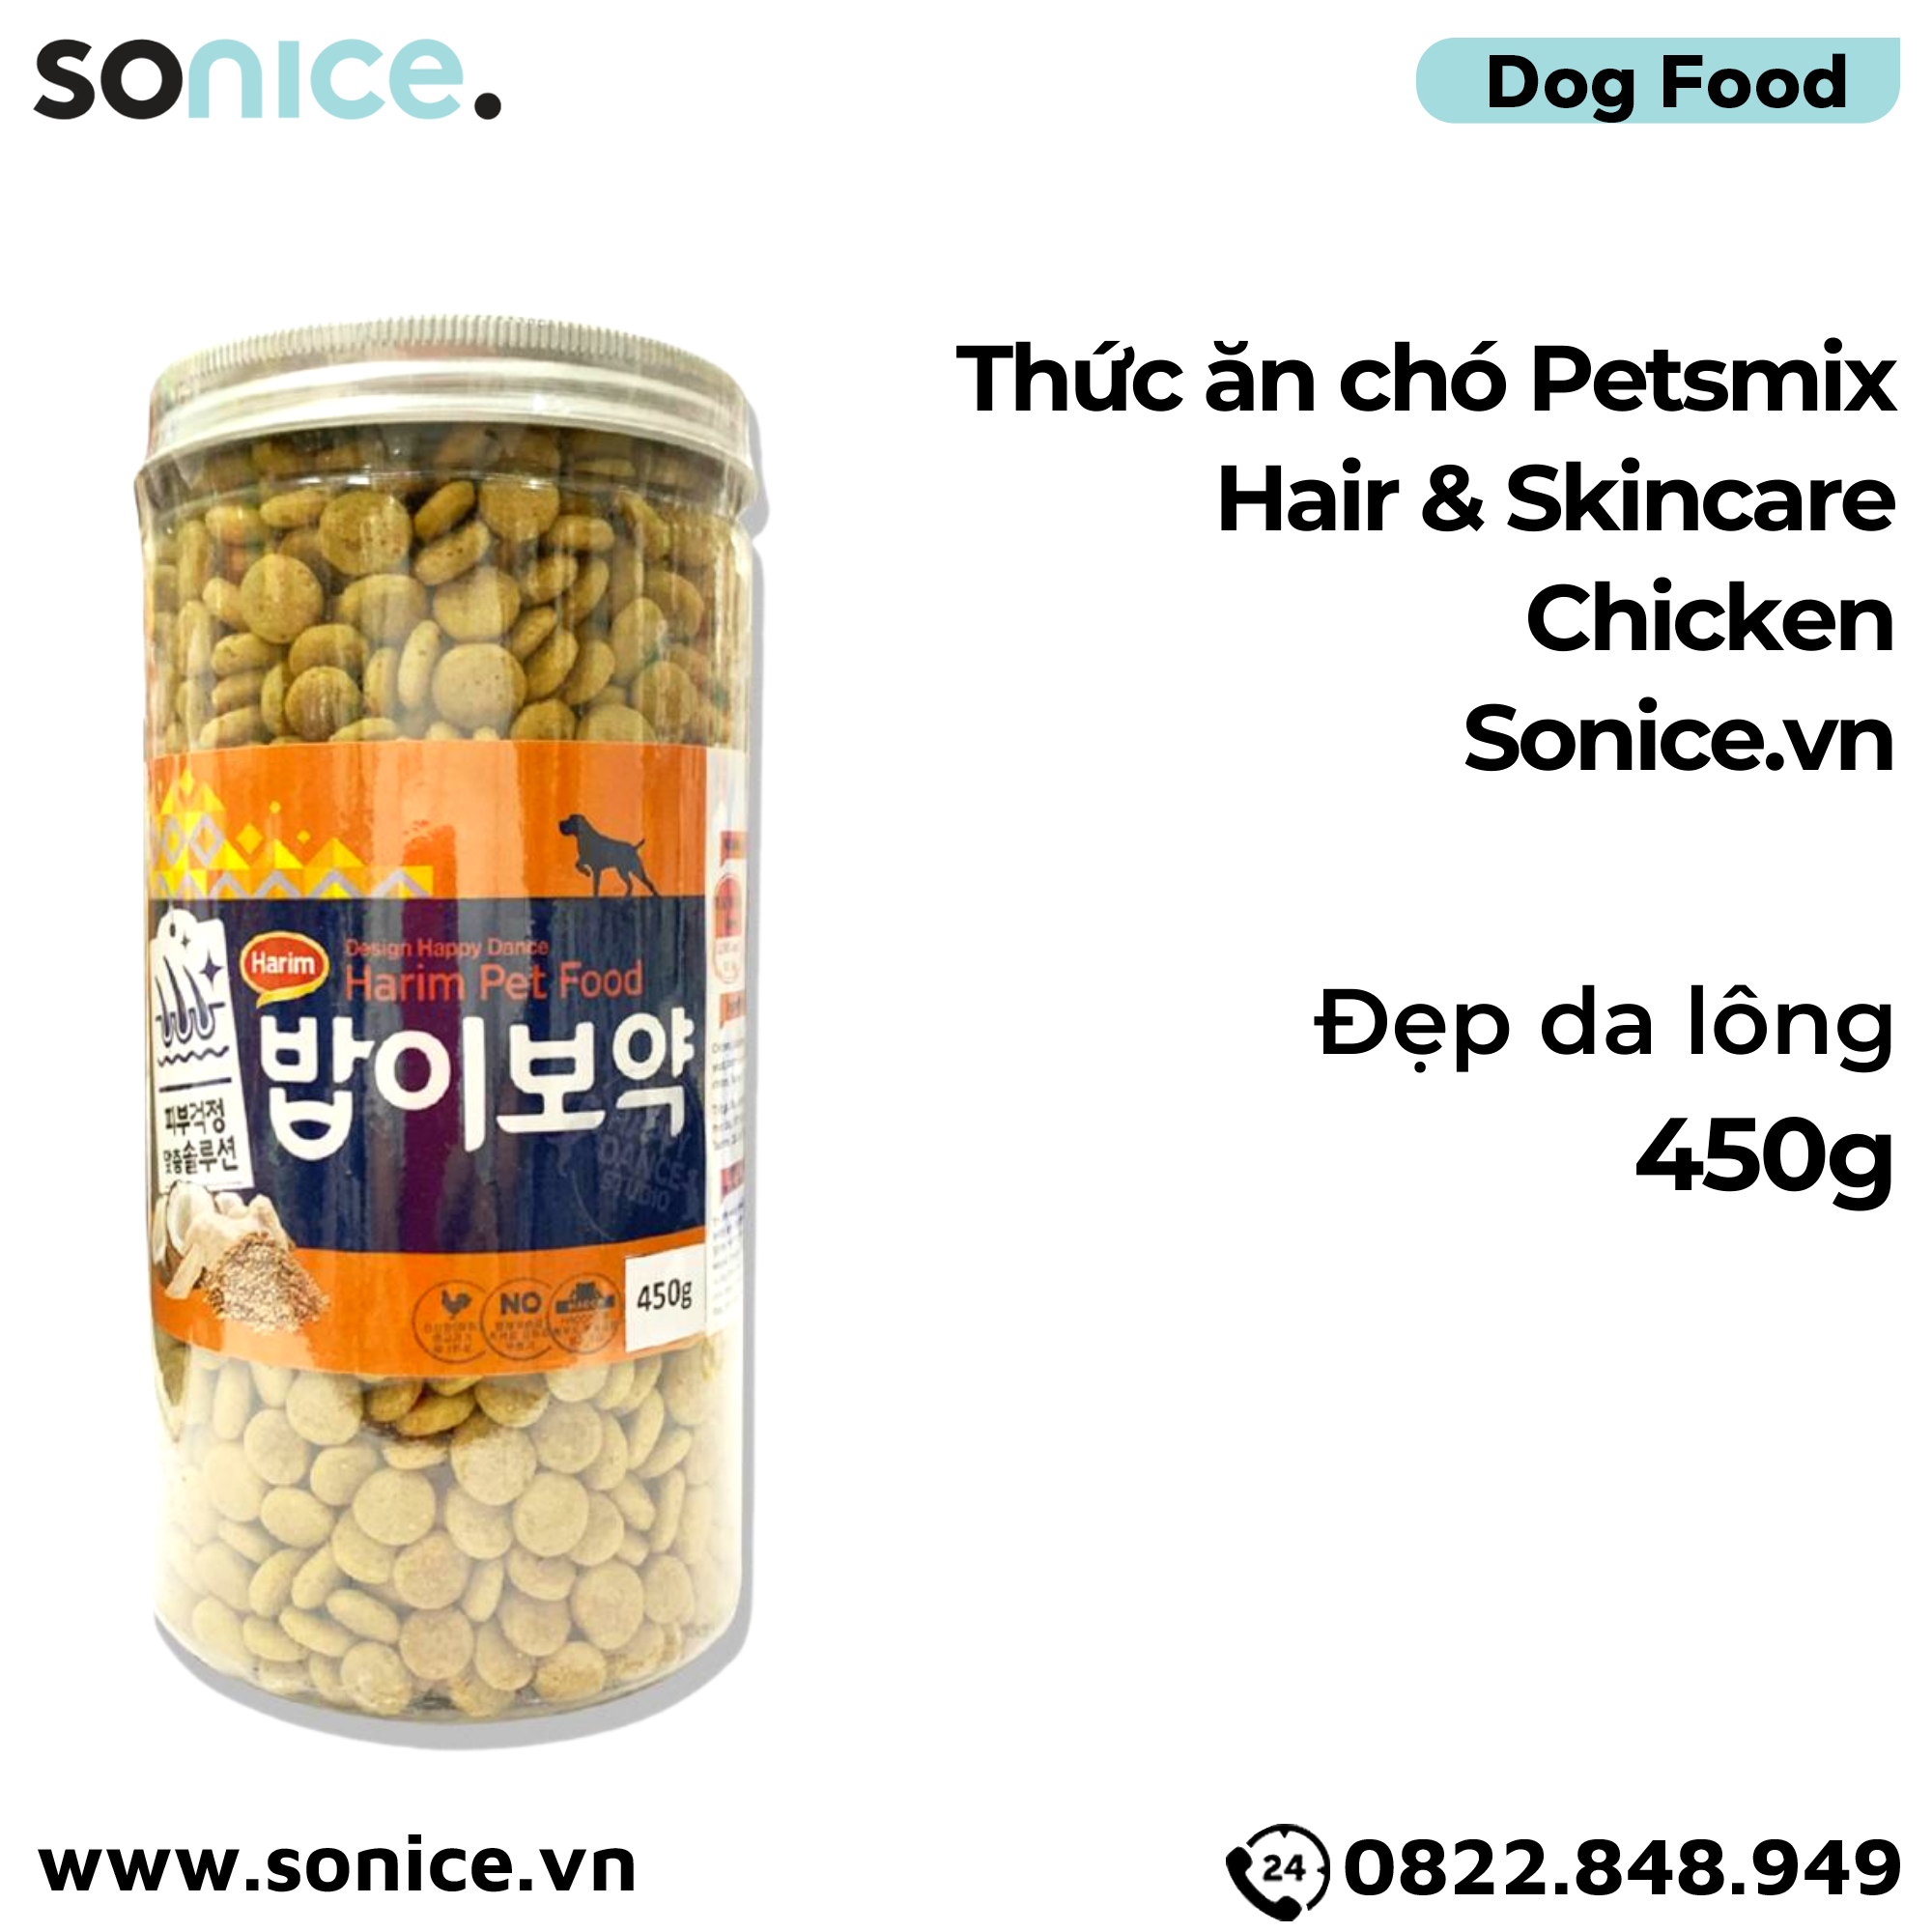  Thức ăn chó Petsmix Hair & Skincare Chicken 450g - Đẹp da lông SONICE. 